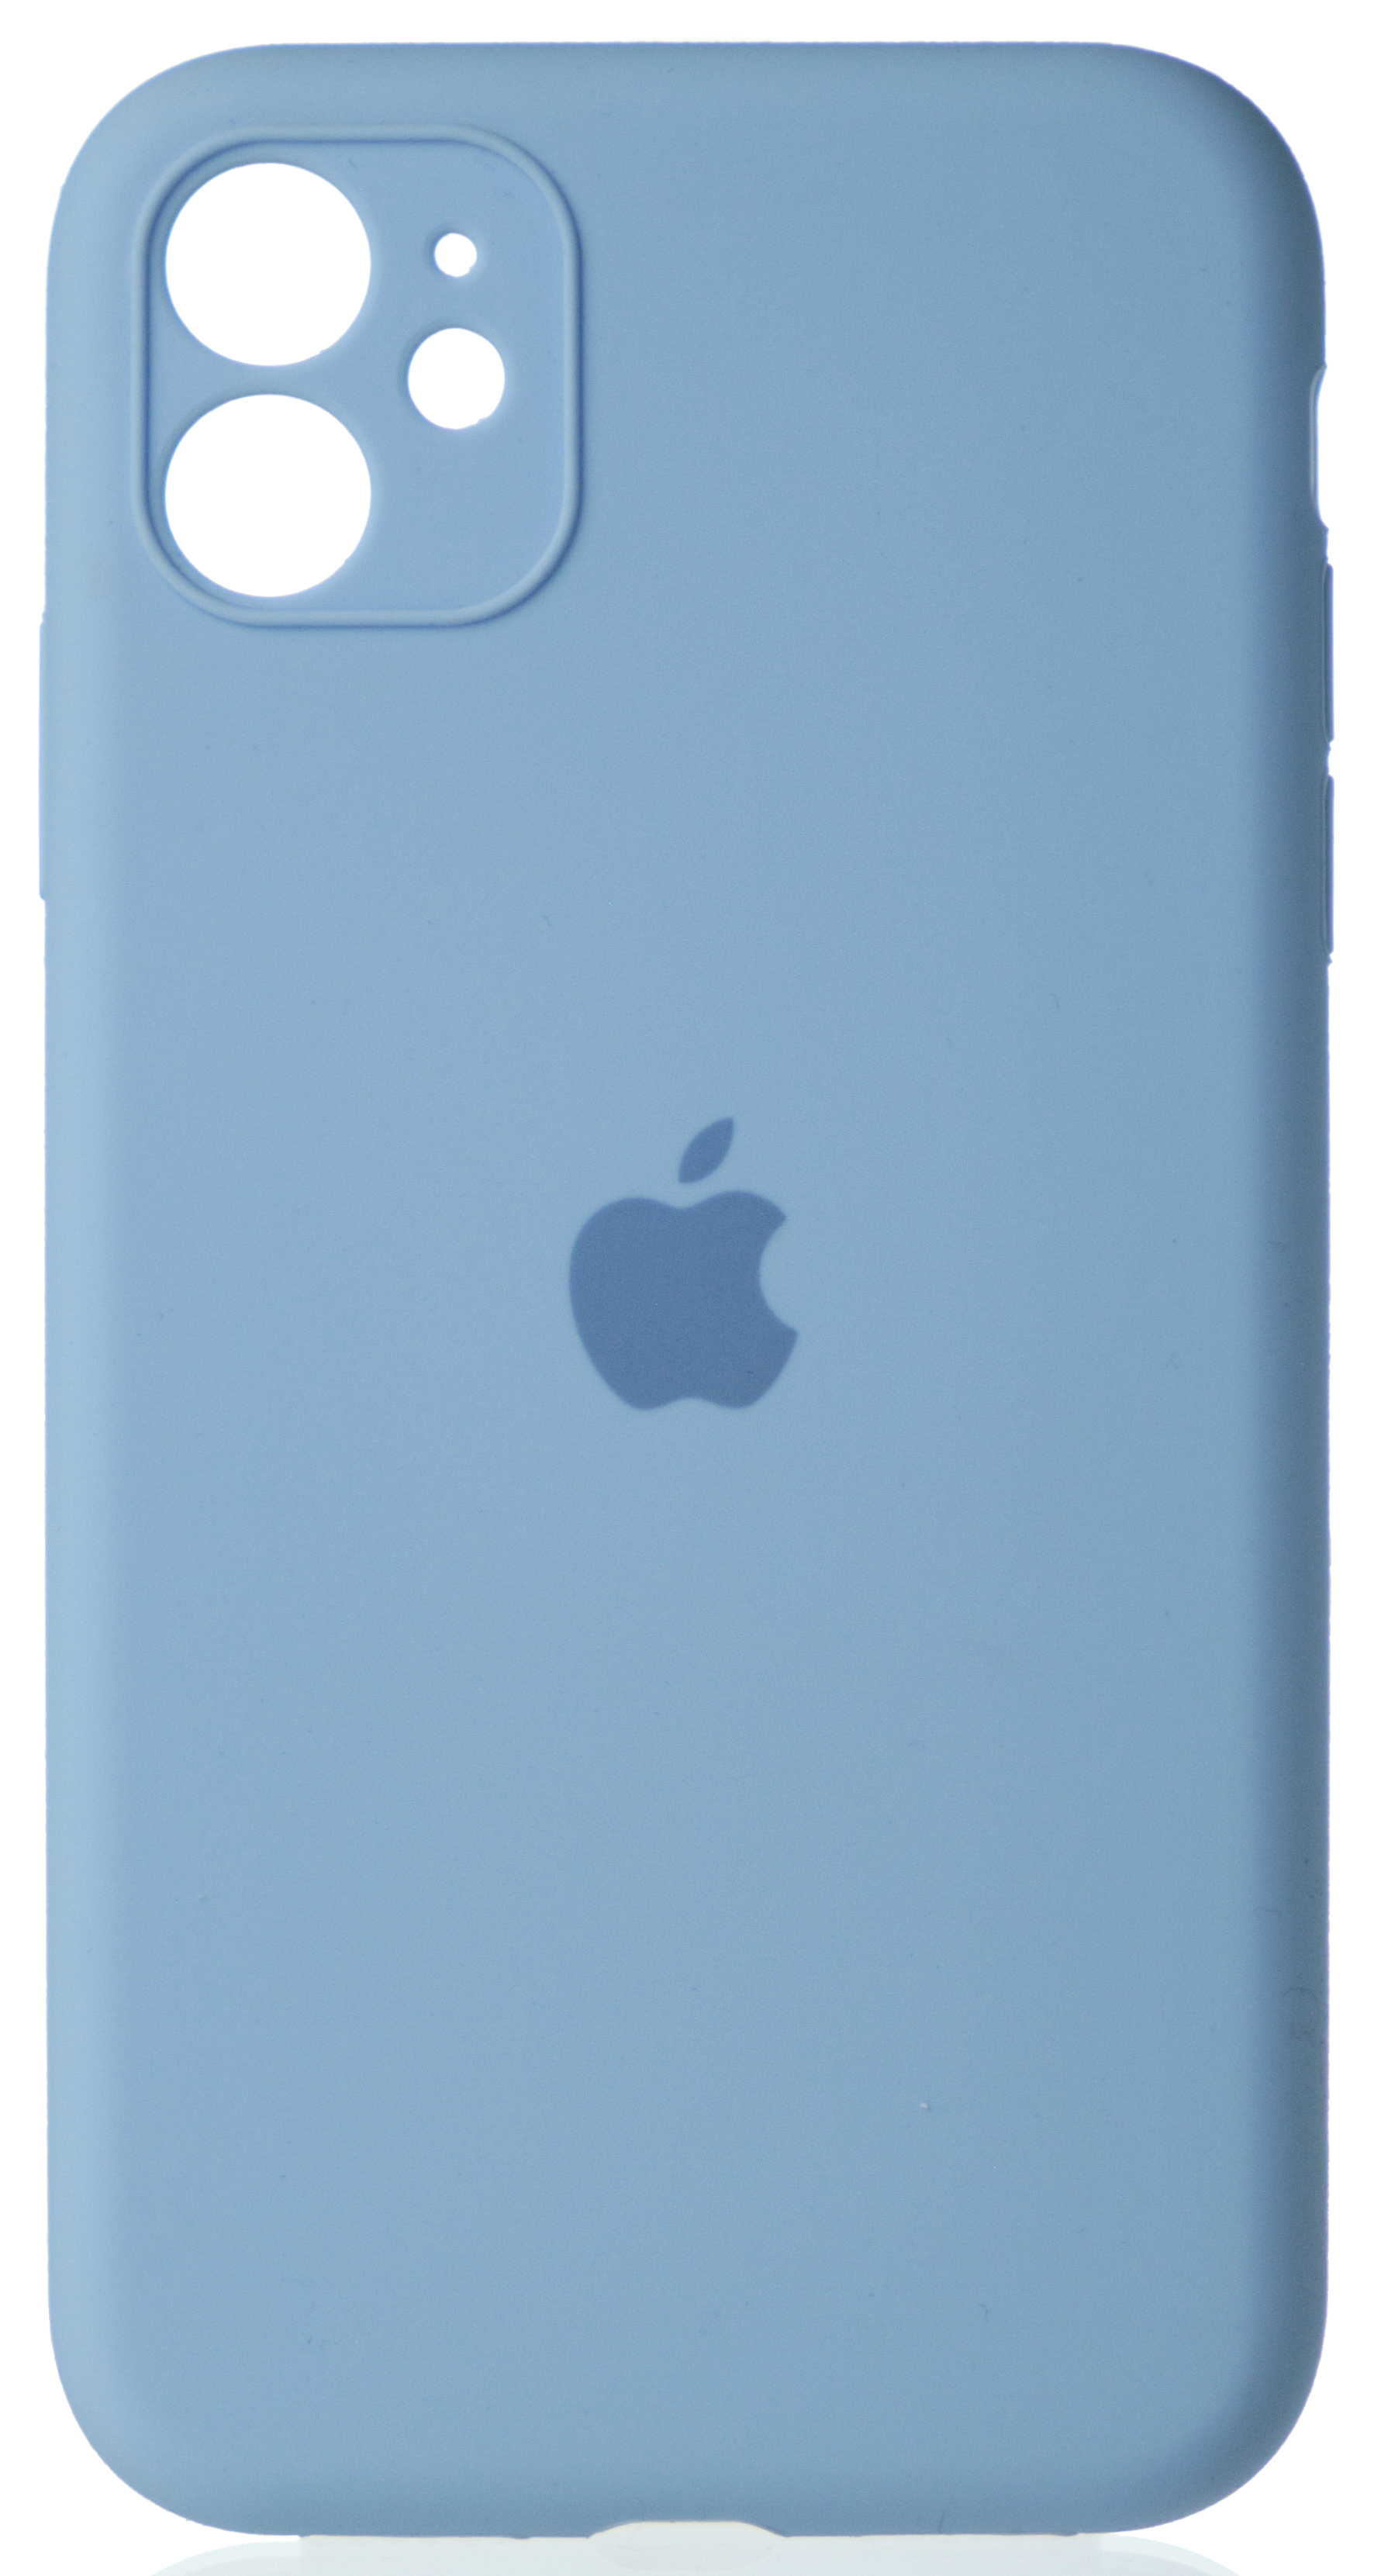 Чехол Silicone Case полная защита для iPhone 11 светло-голубой